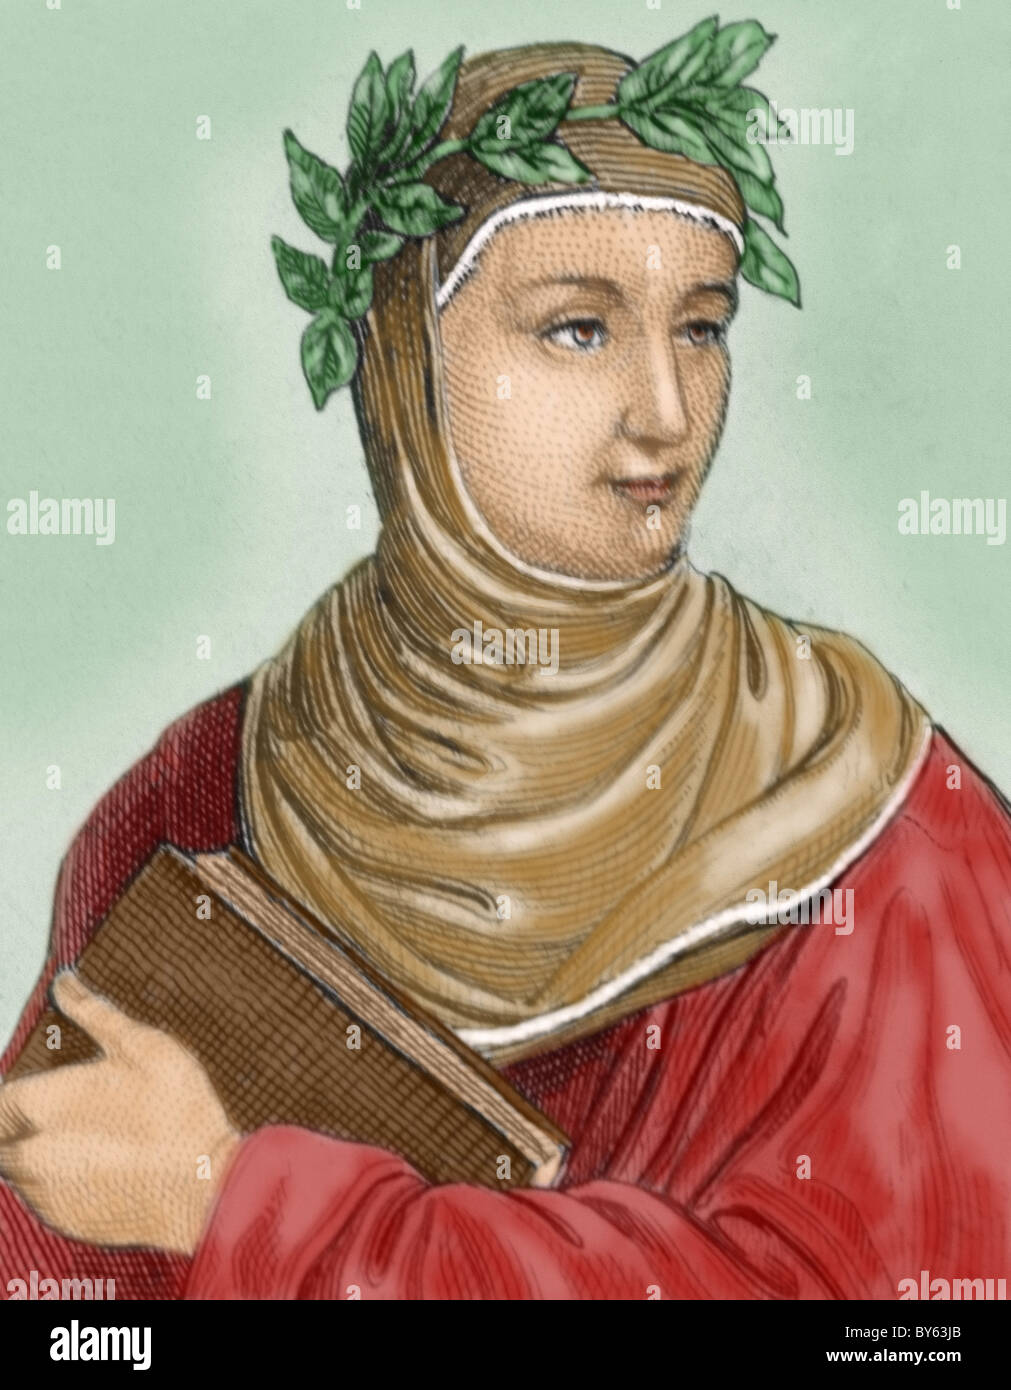 Boccaccio, Giovanni (1313-1375). Italienischer Schriftsteller. Farbige Gravur. Stockfoto